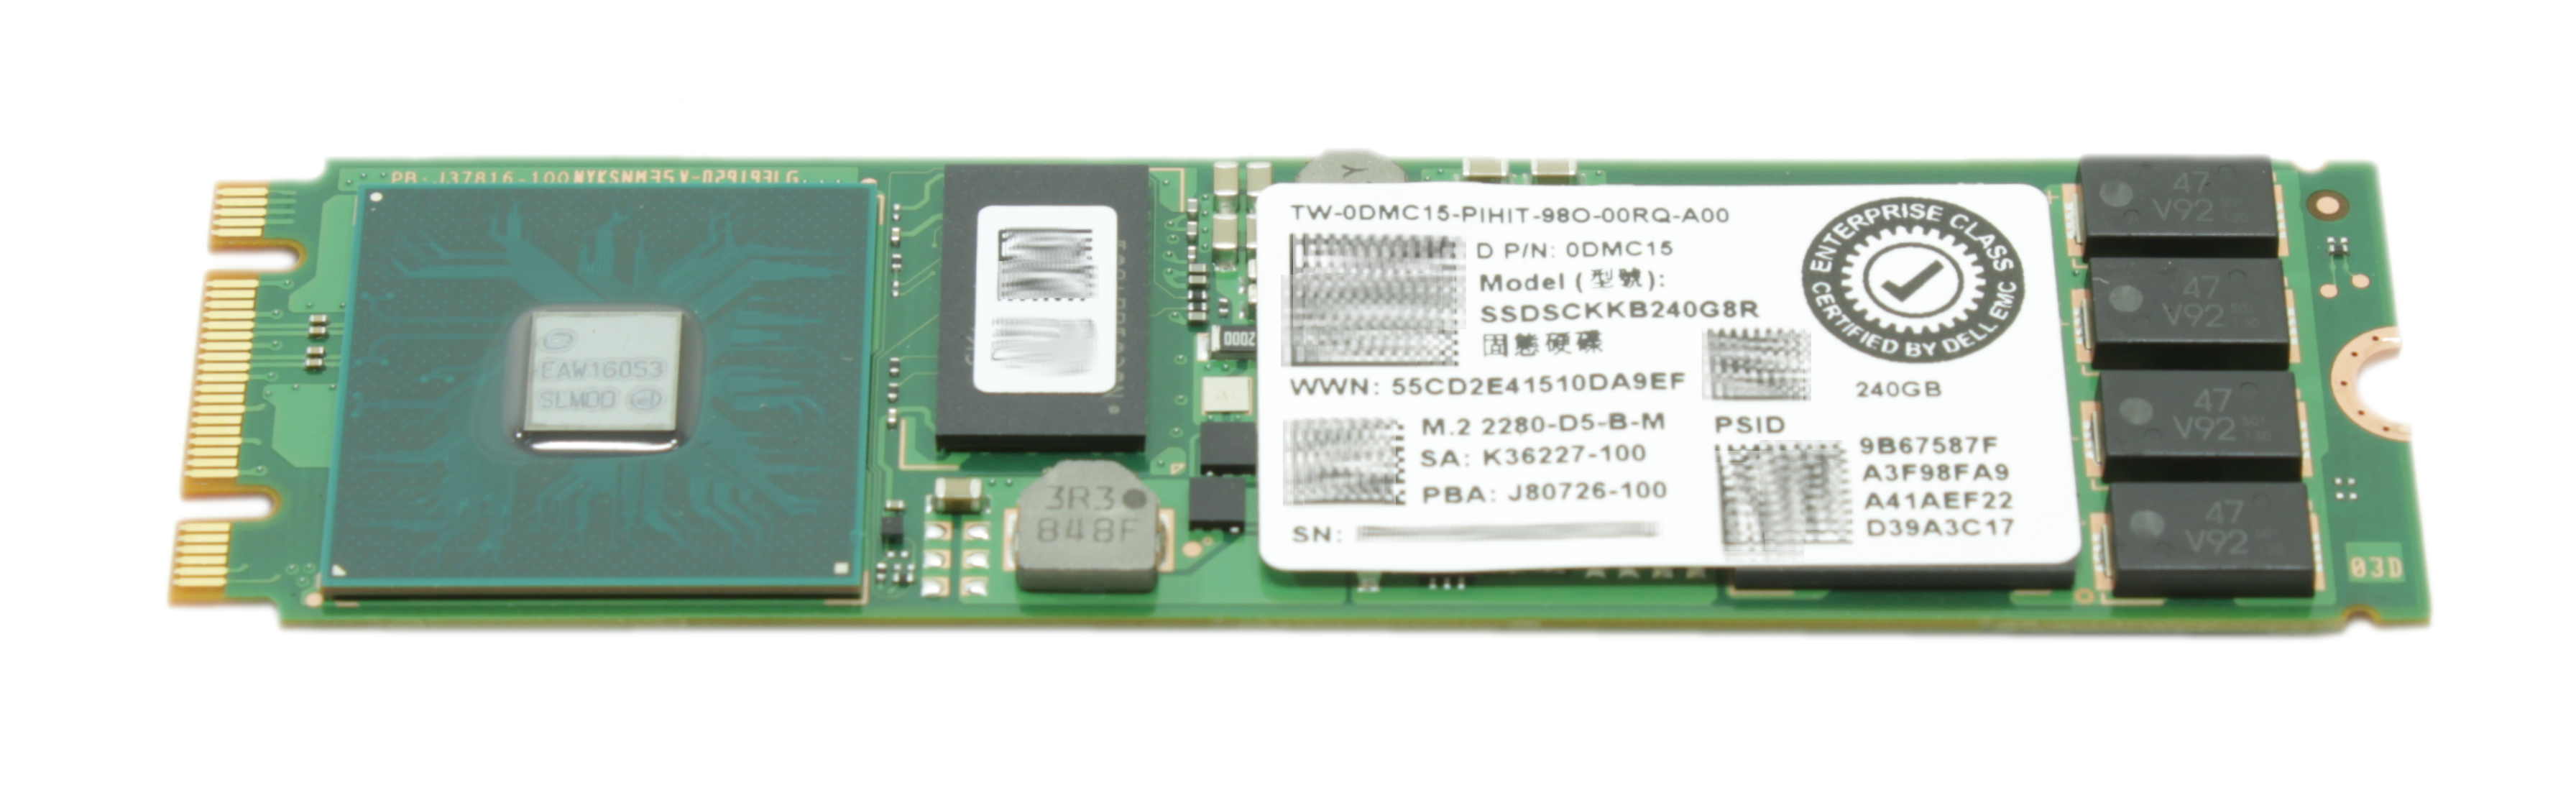 Dell 240Gb SSDSCKKB240G8R TLC SATA SSD M.2 6Gbps DMC15